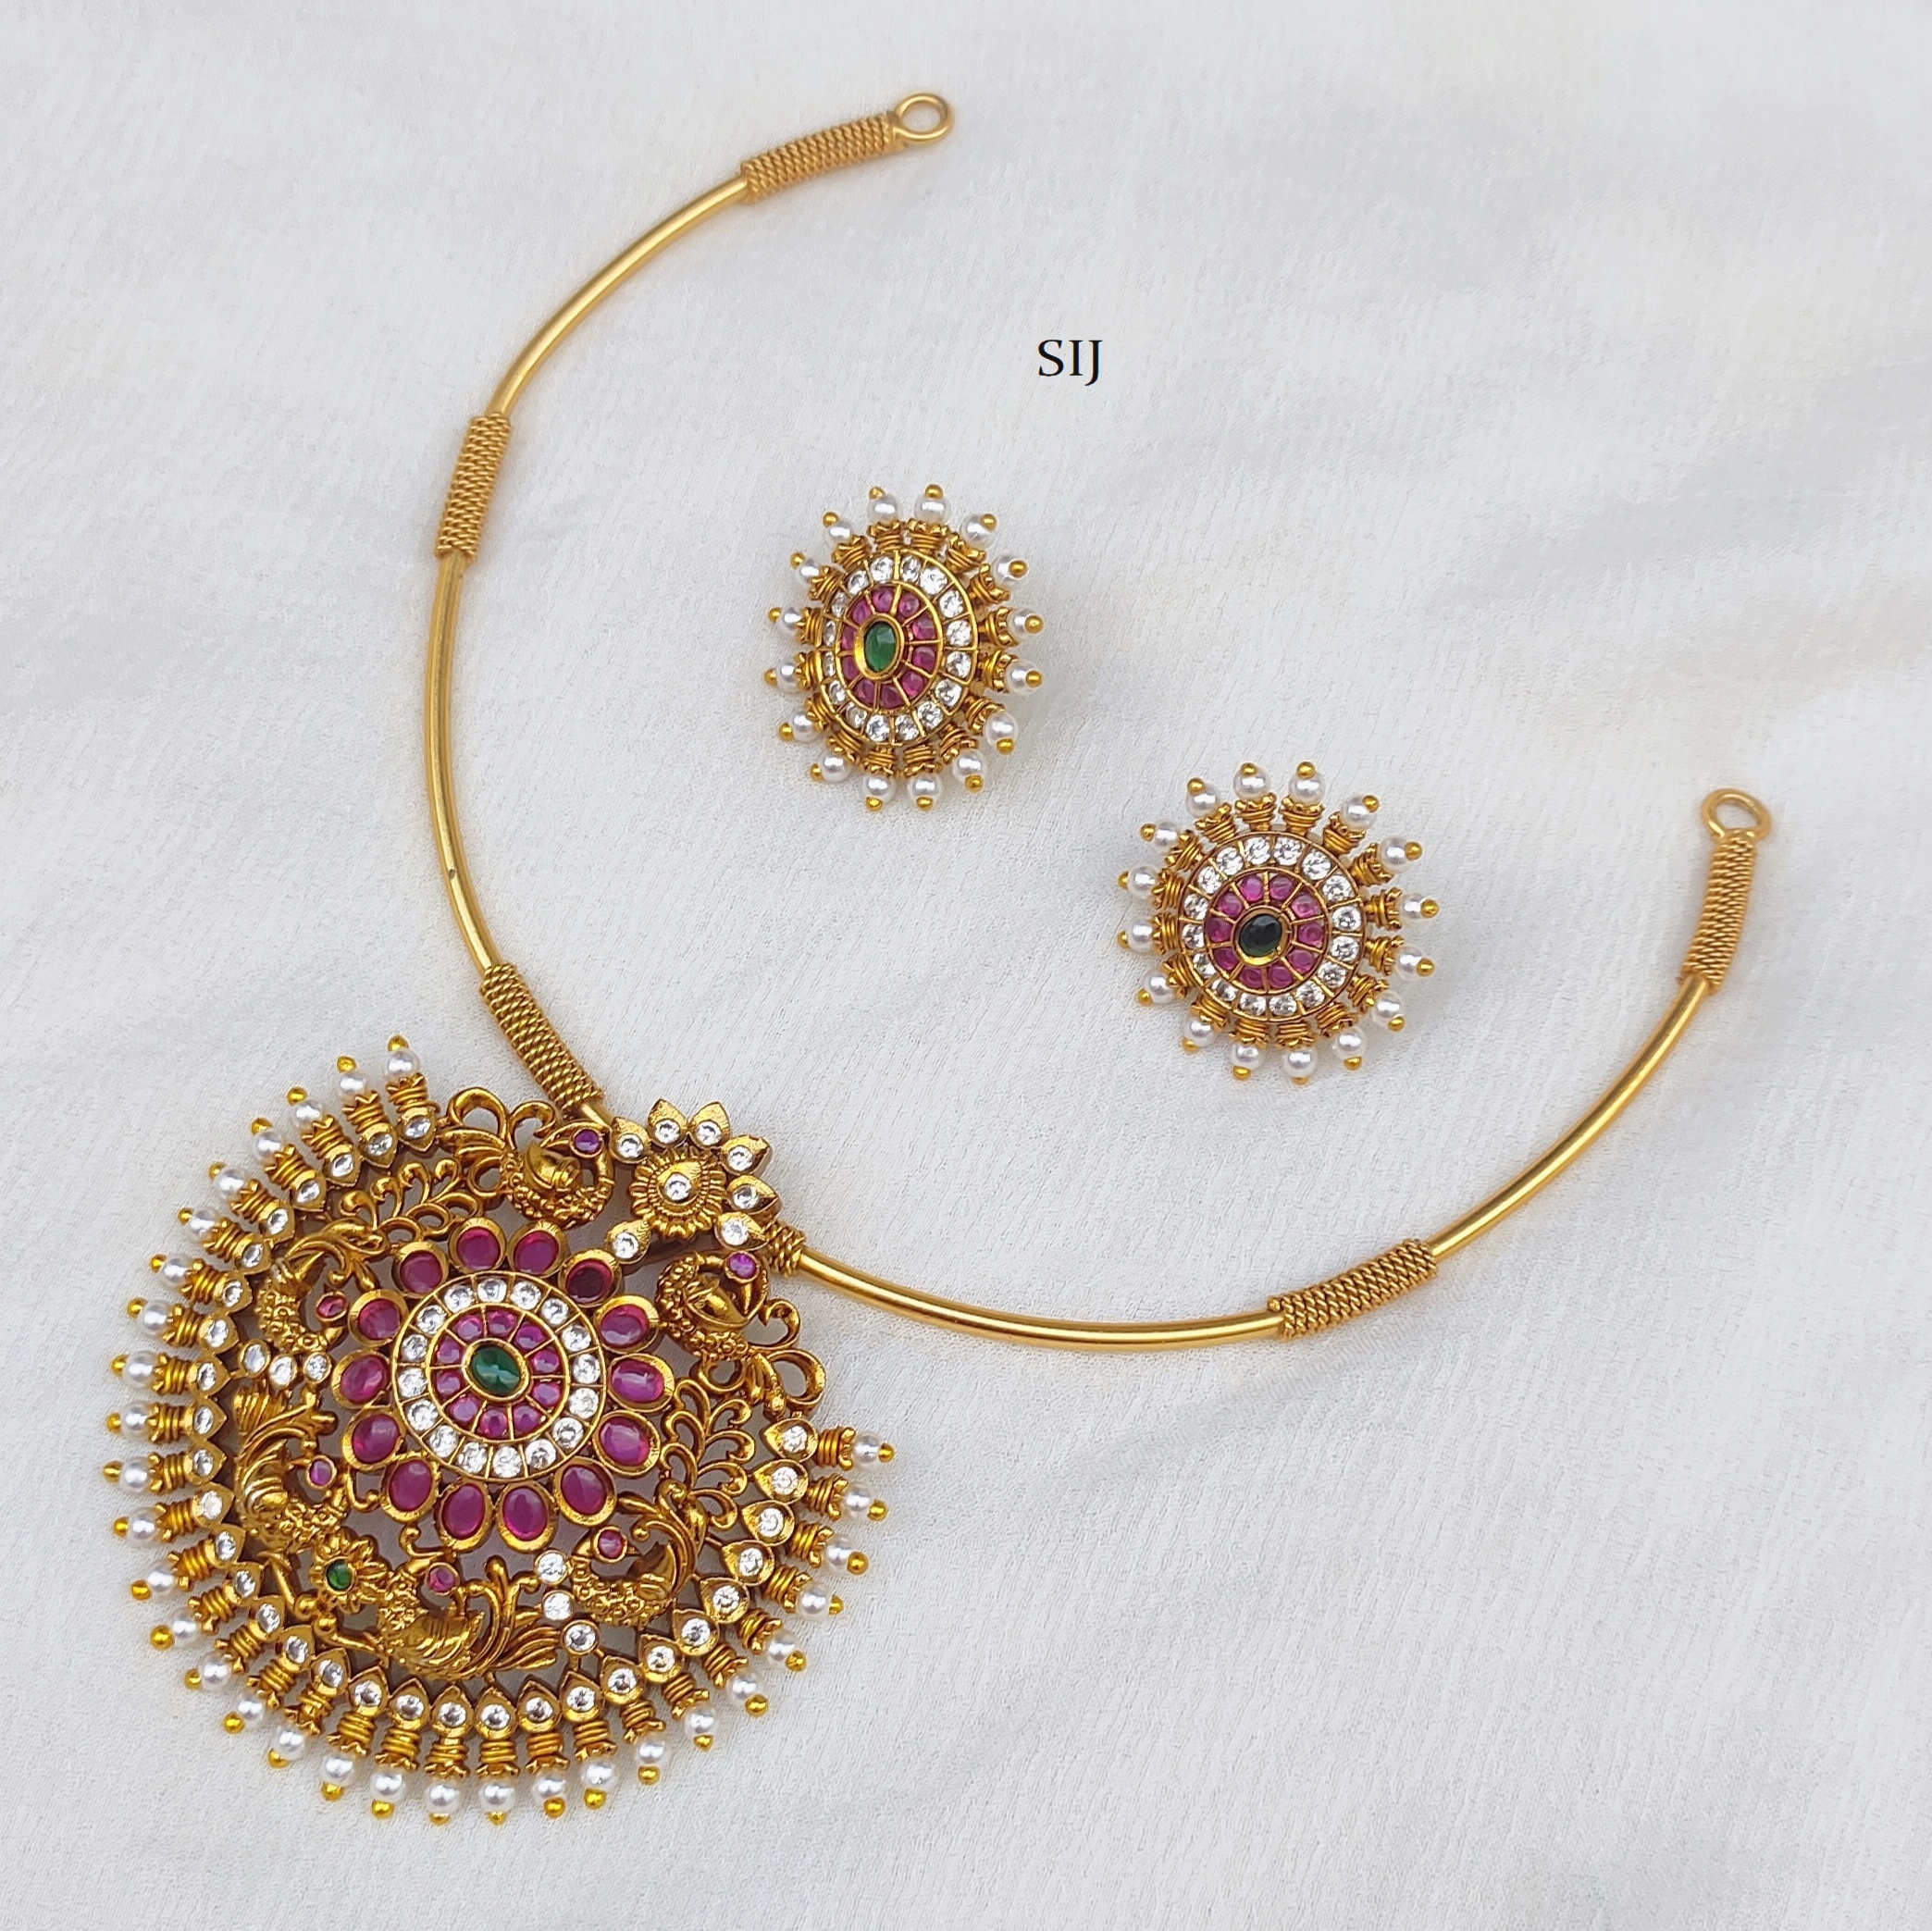 Antique Hasli Necklace with Multi Stones Pendant